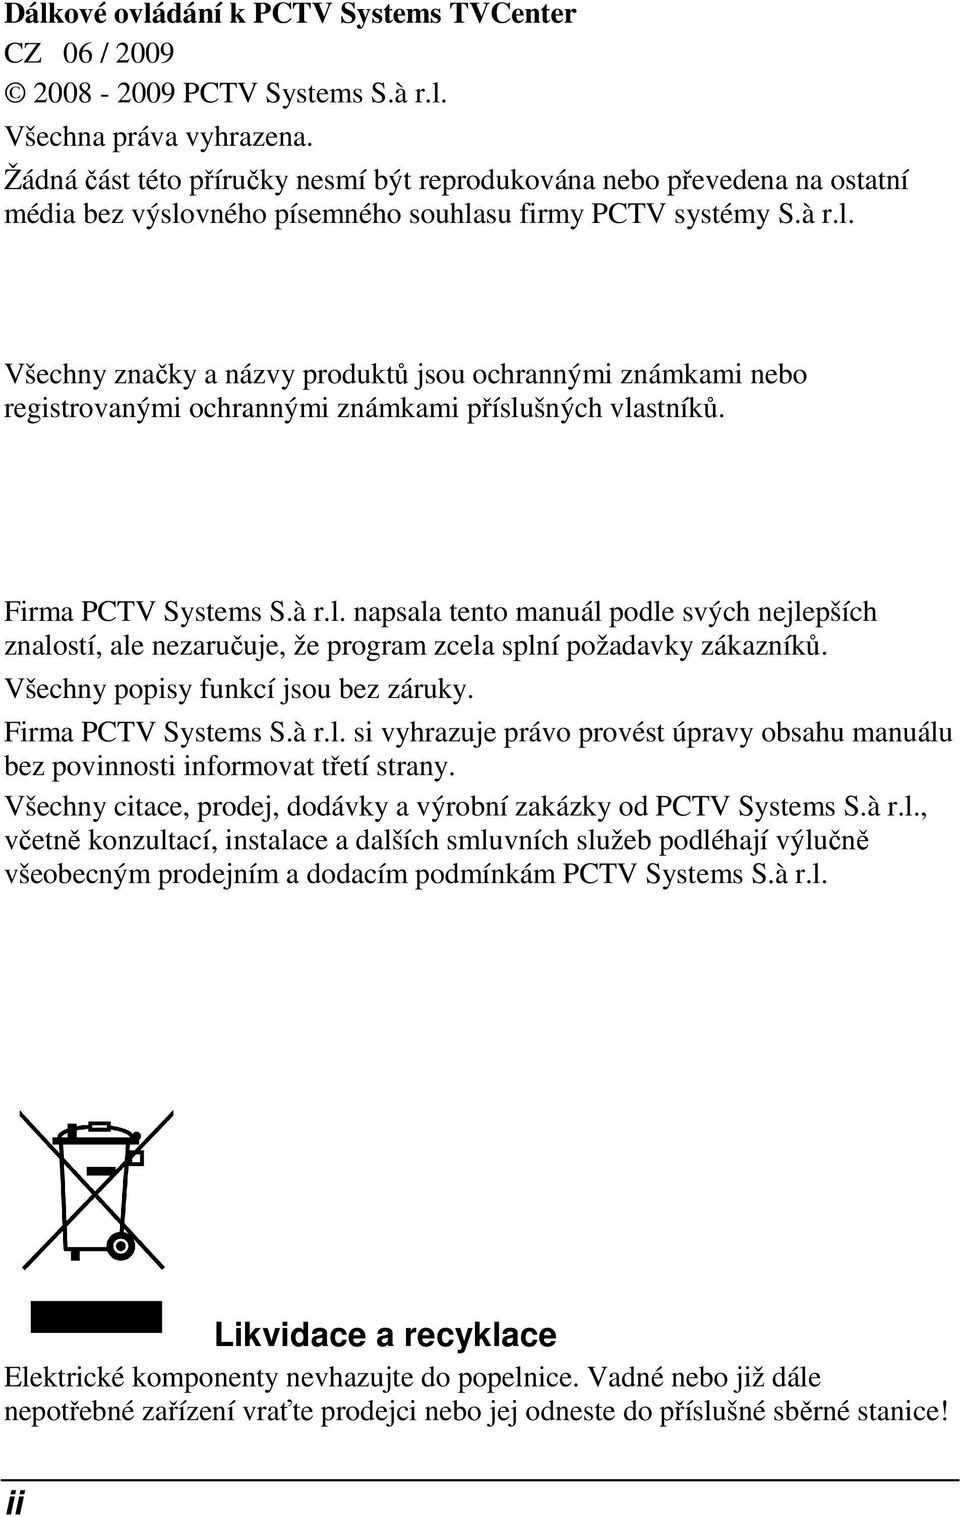 vného písemného souhlasu firmy PCTV systémy S.à r.l. Všechny značky a názvy produktů jsou ochrannými známkami nebo registrovanými ochrannými známkami příslušných vlastníků. Firma PCTV Systems S.à r.l. napsala tento manuál podle svých nejlepších znalostí, ale nezaručuje, že program zcela splní požadavky zákazníků.